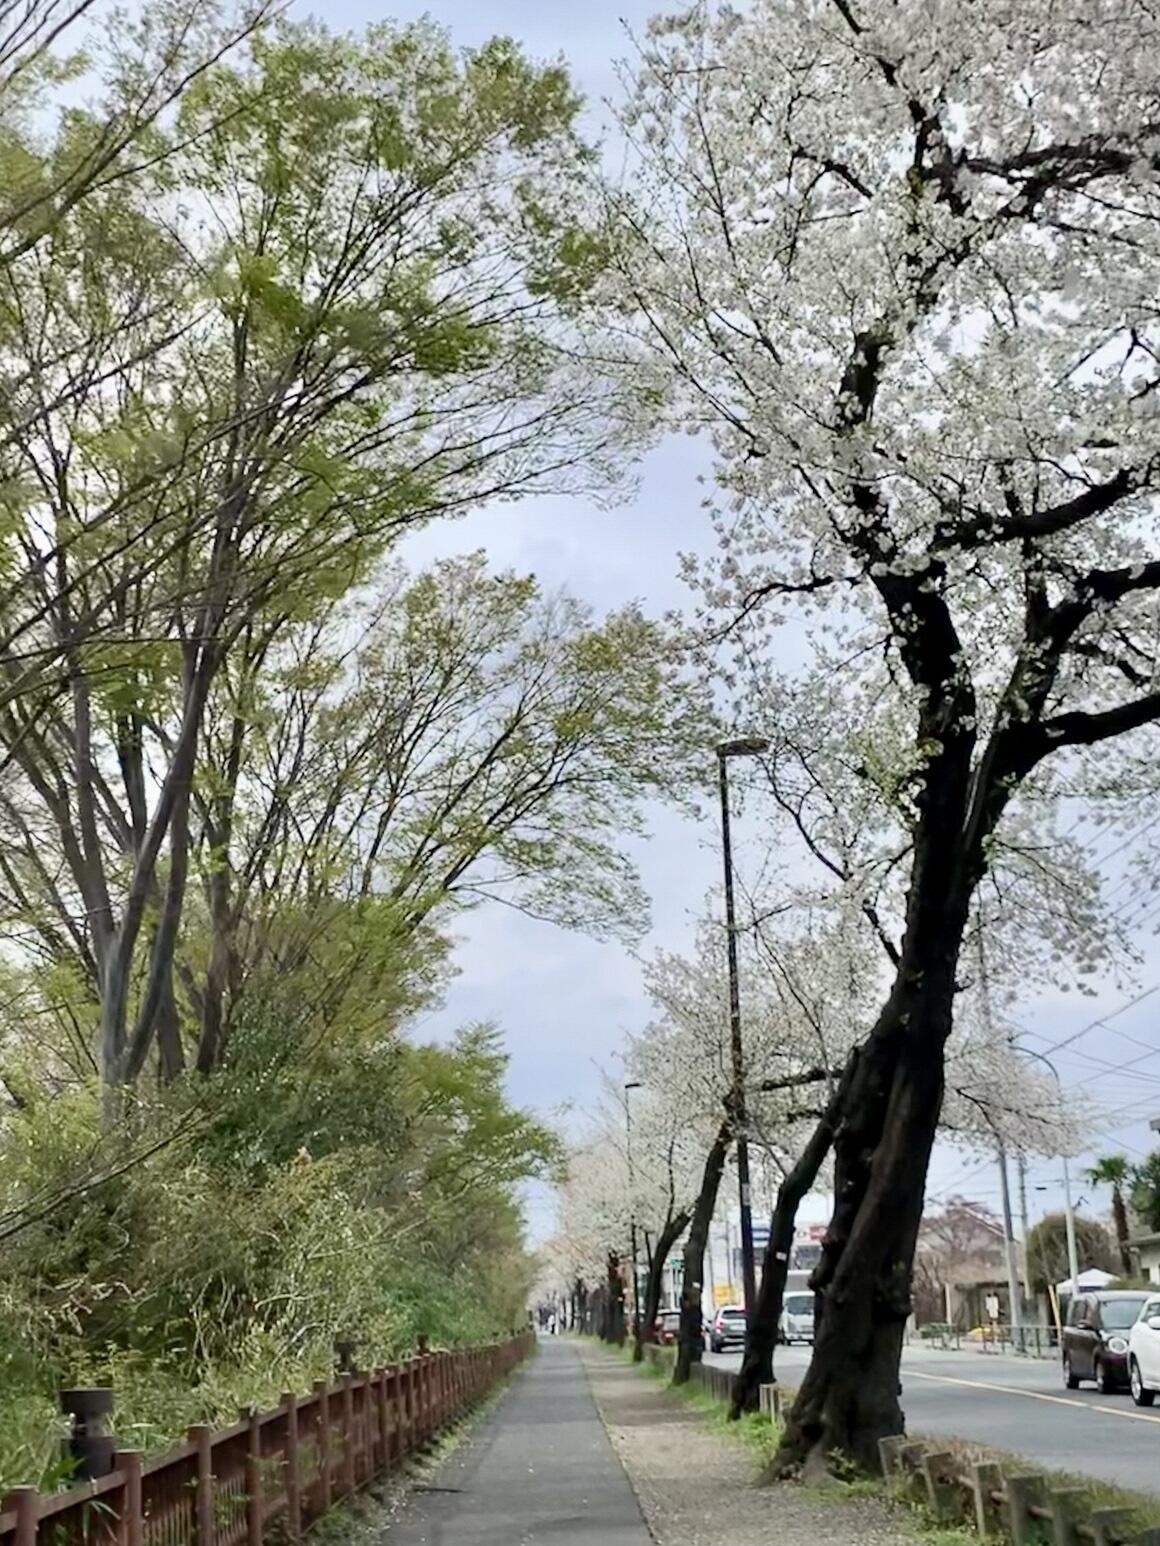 左側に玉川上水の新緑、右側に満開の小金井桜の並木、五日市街道の車列の写真